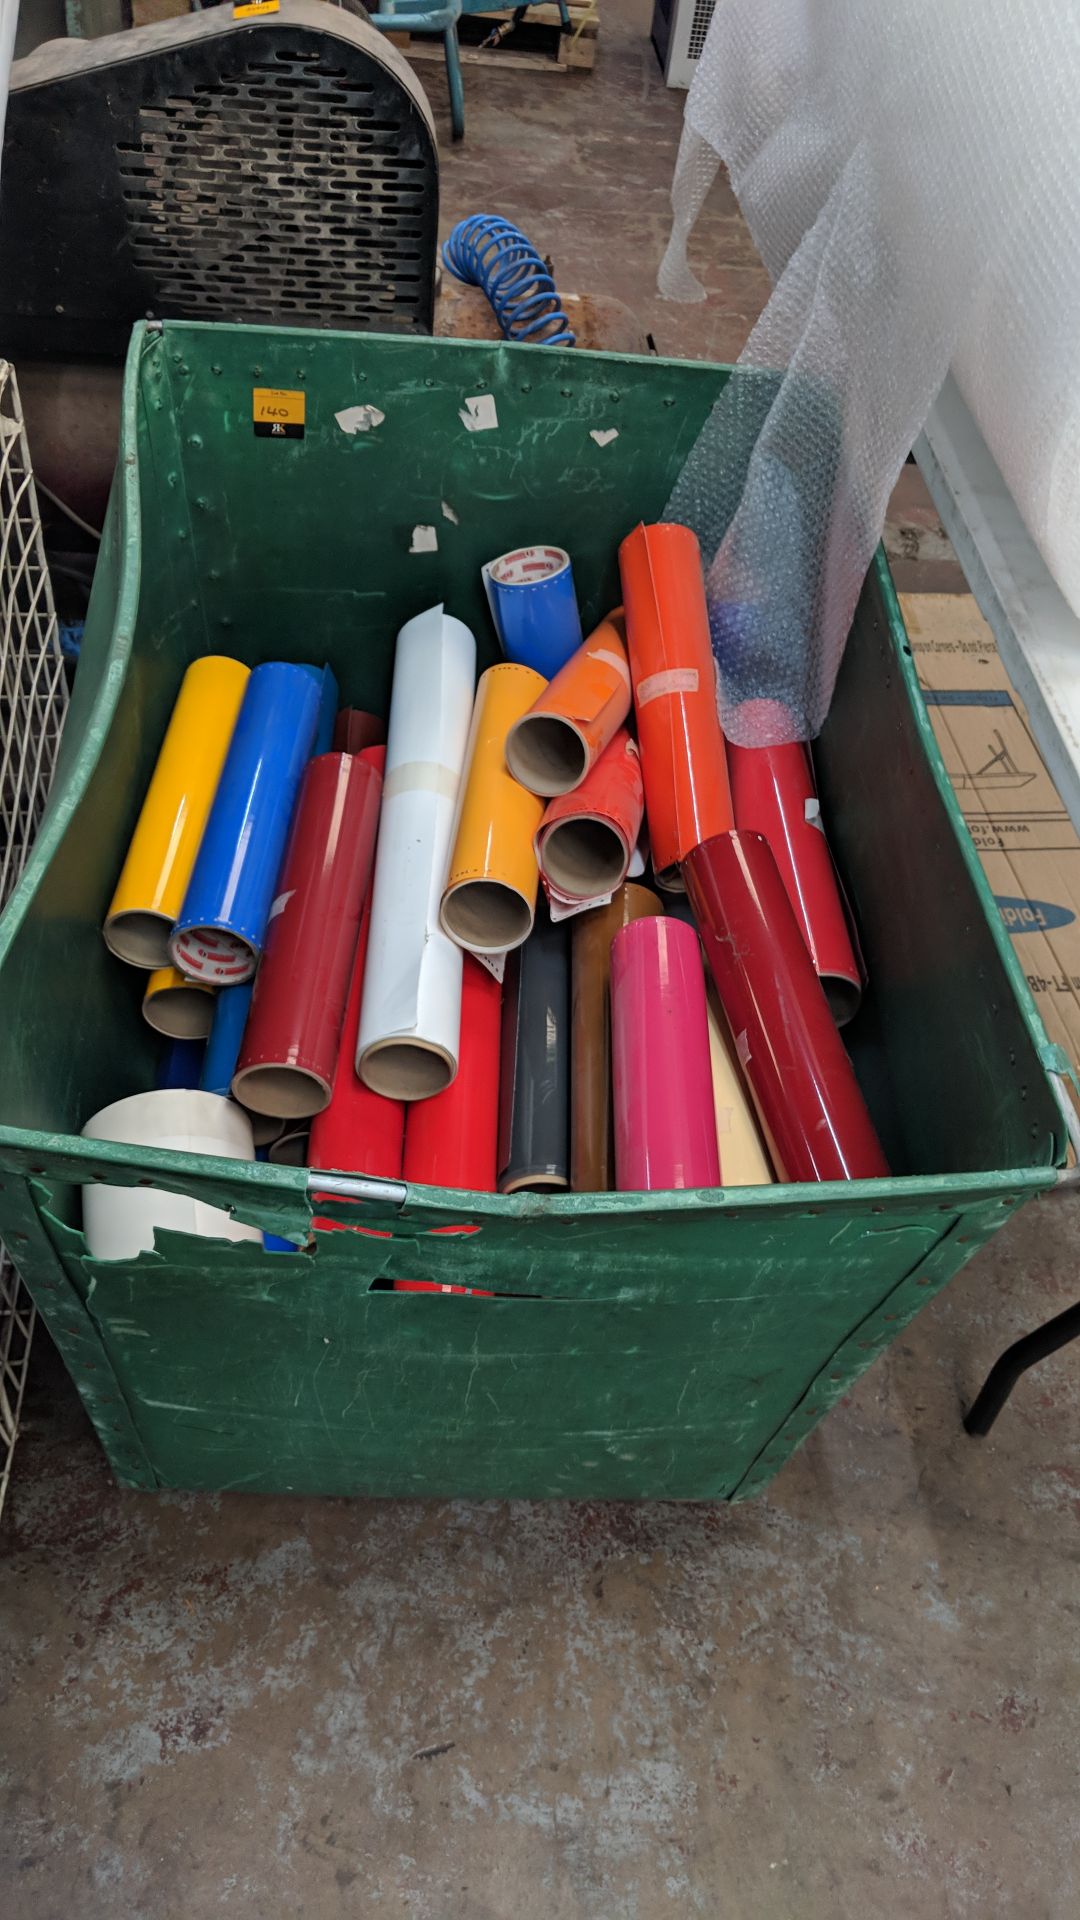 Contents of a wheelie bin of assorted vinyl off-cut rolls